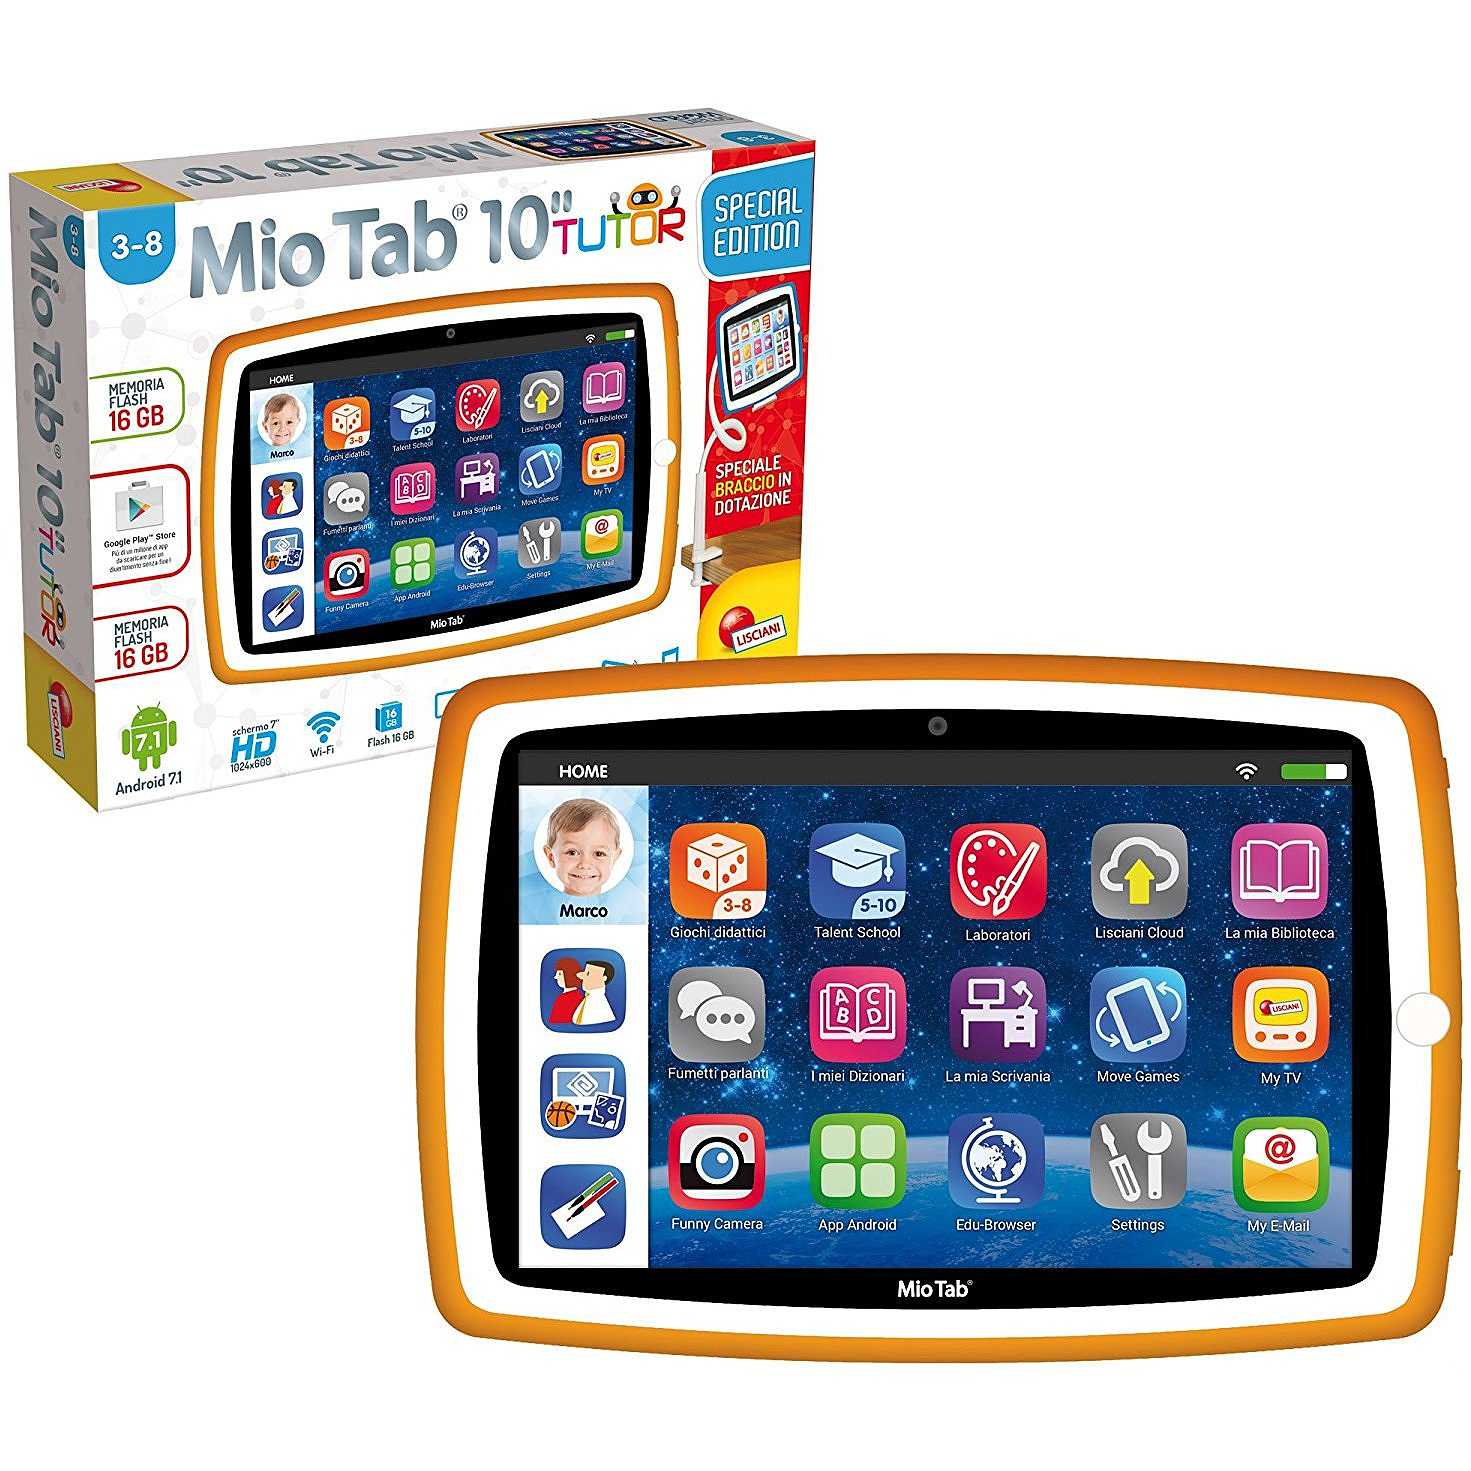 lisciani Tablet per Bambini 10 pollici Memoria 16 GB Fotocamera 2 Mpx Wifi  HDMI colore Blu - 71999 Mio Tab 10' Evolution Stem Coding 2019 Special  Edition